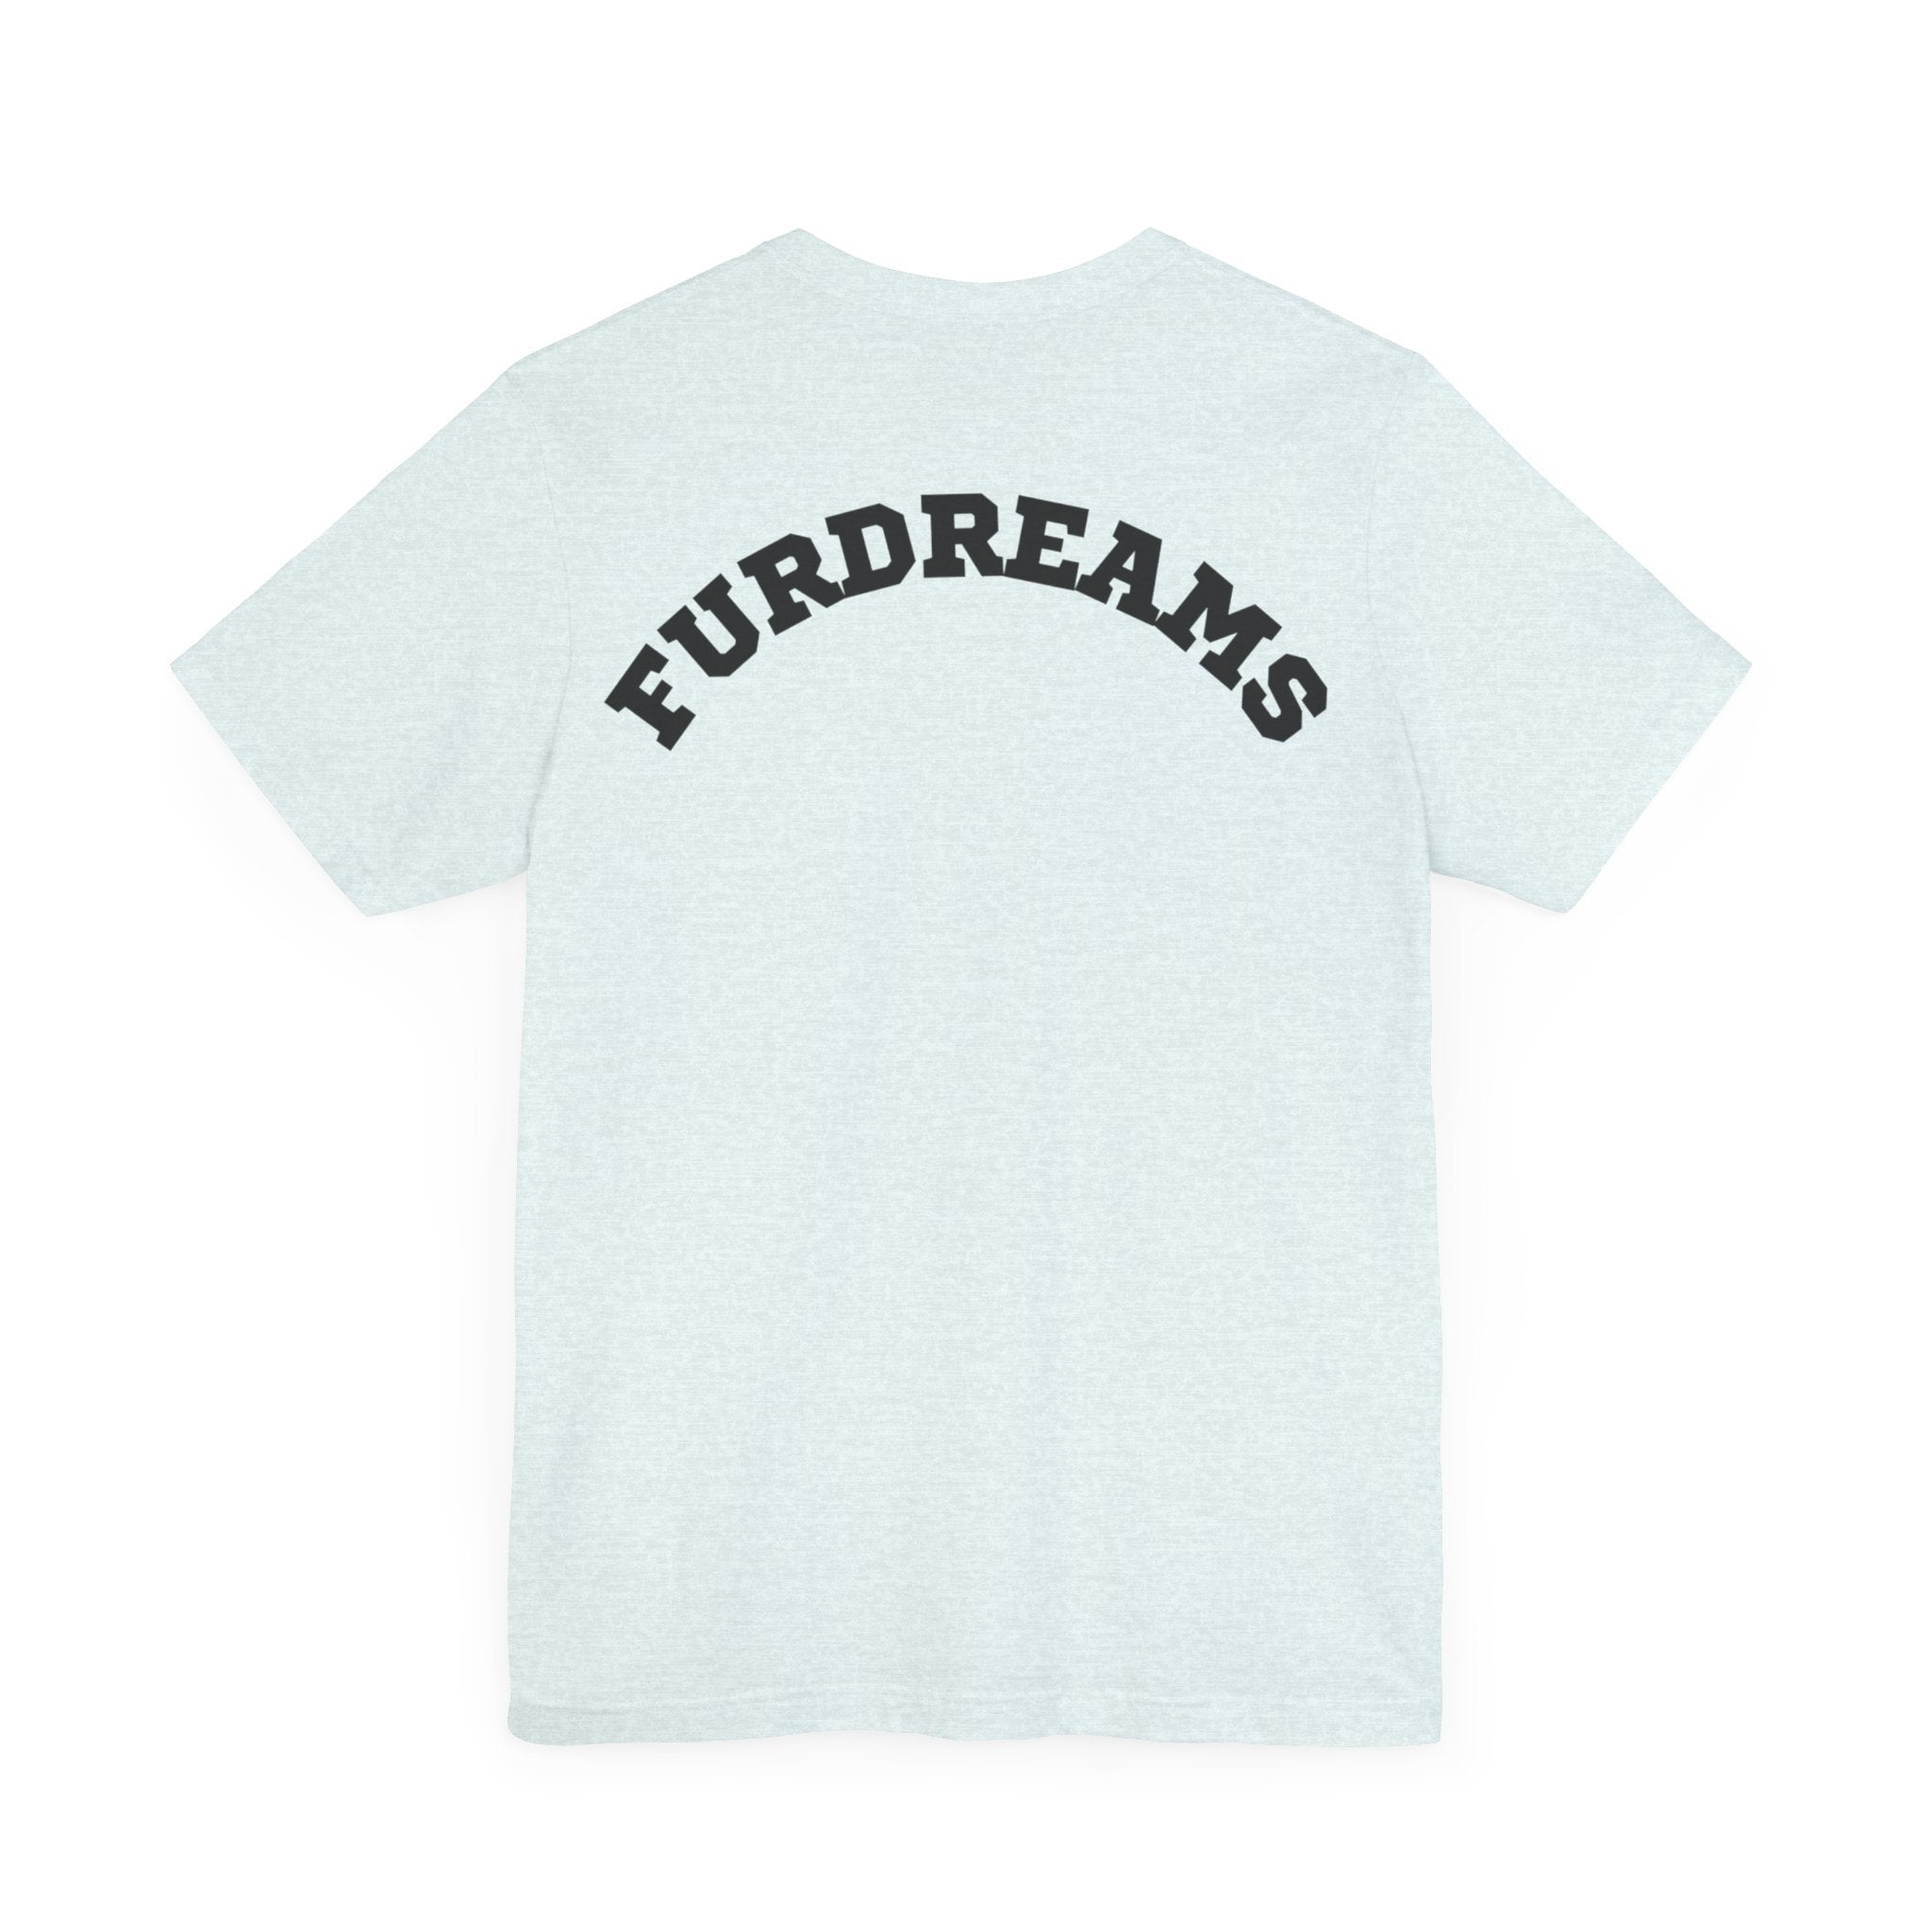 FURDreams “PHL ” II Unisex Jersey Short Sleeve Tee